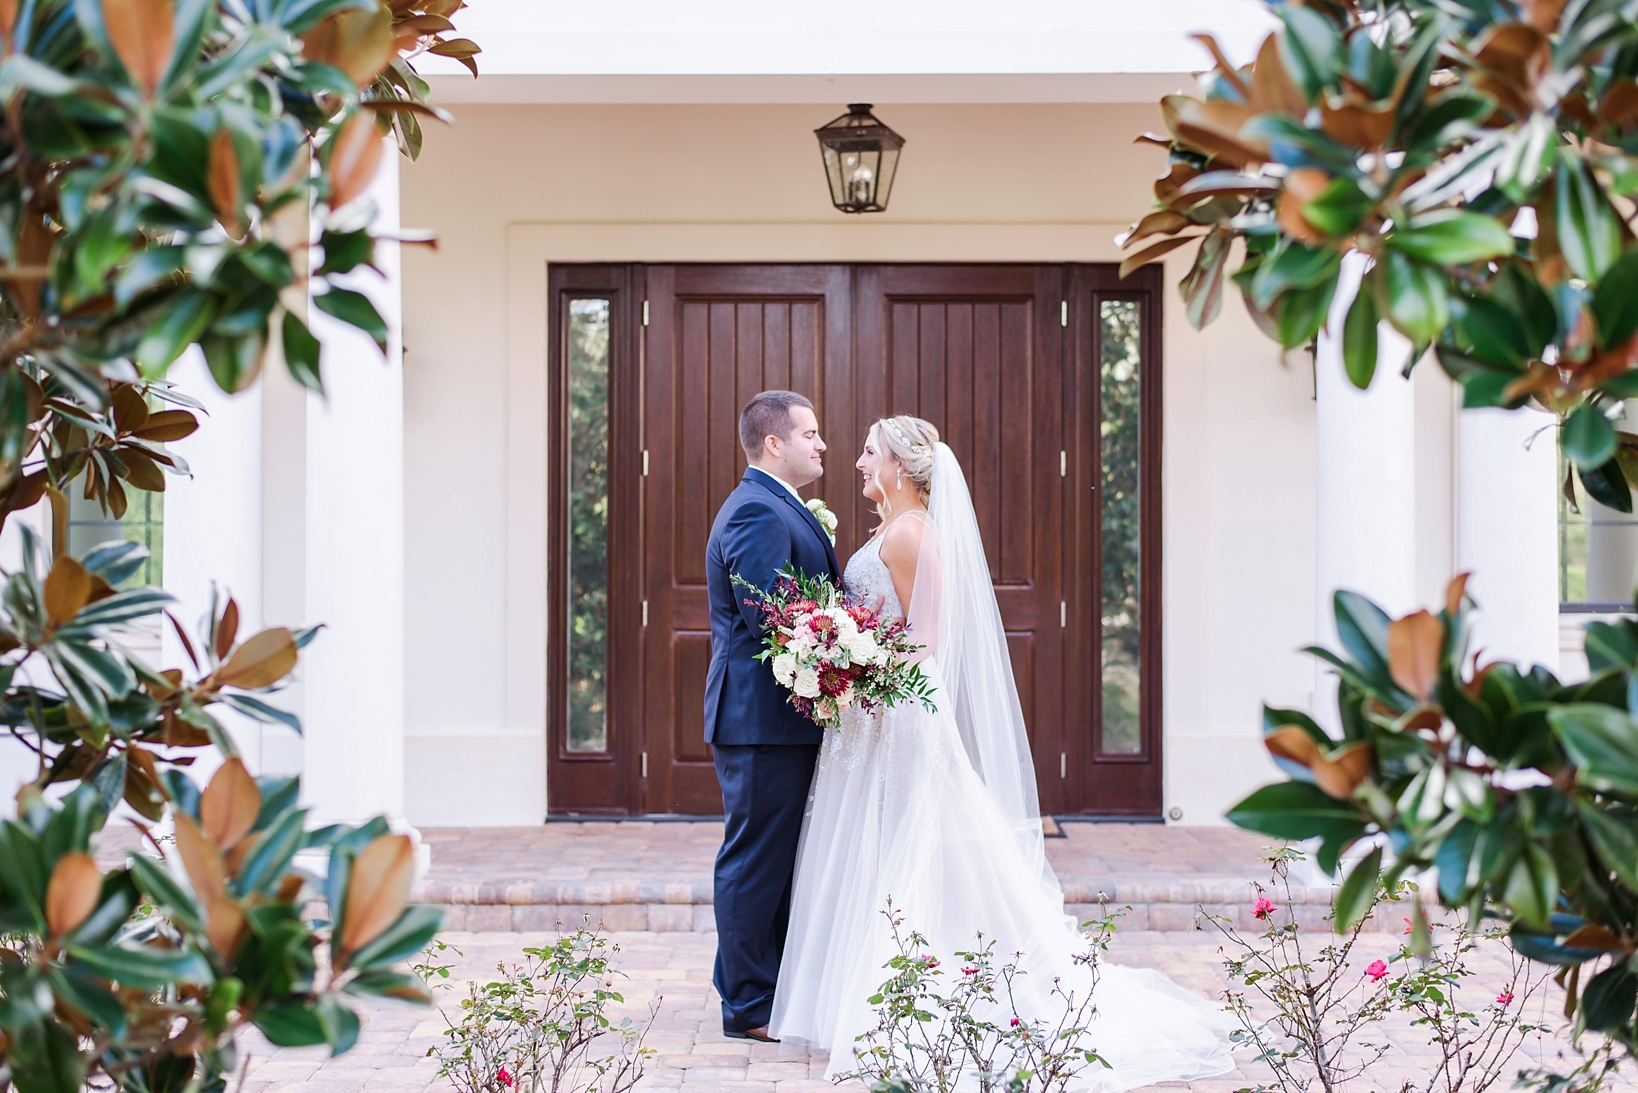 Bride and groom against a dark wood doorway framed by trees